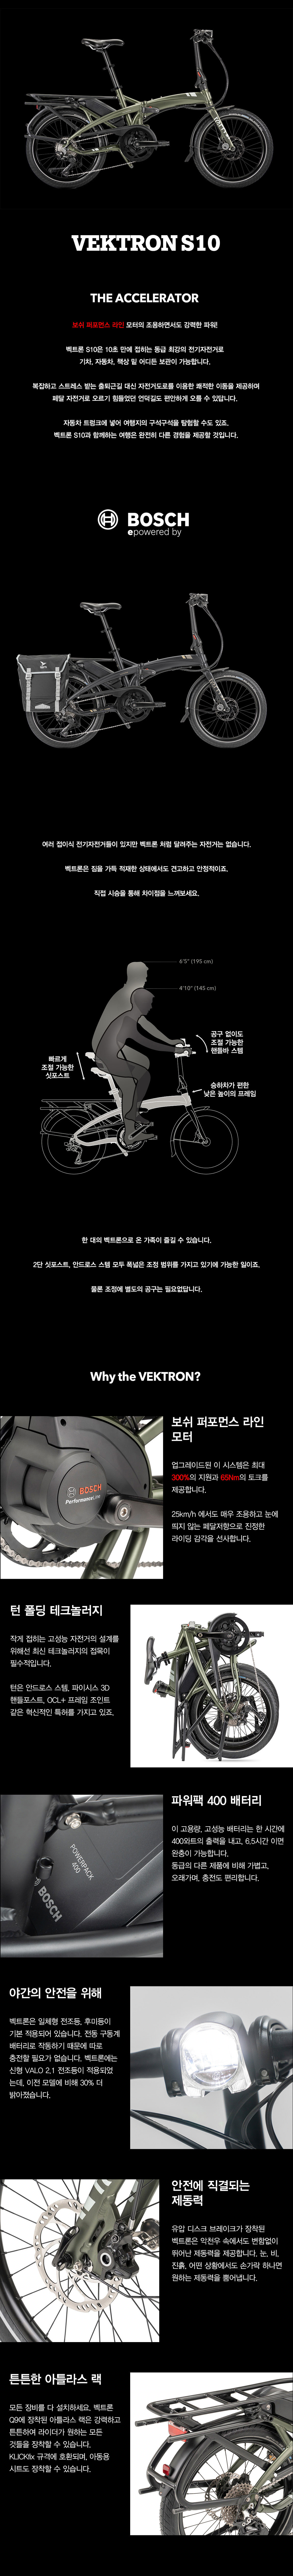 vektrons10_01_014420.jpg